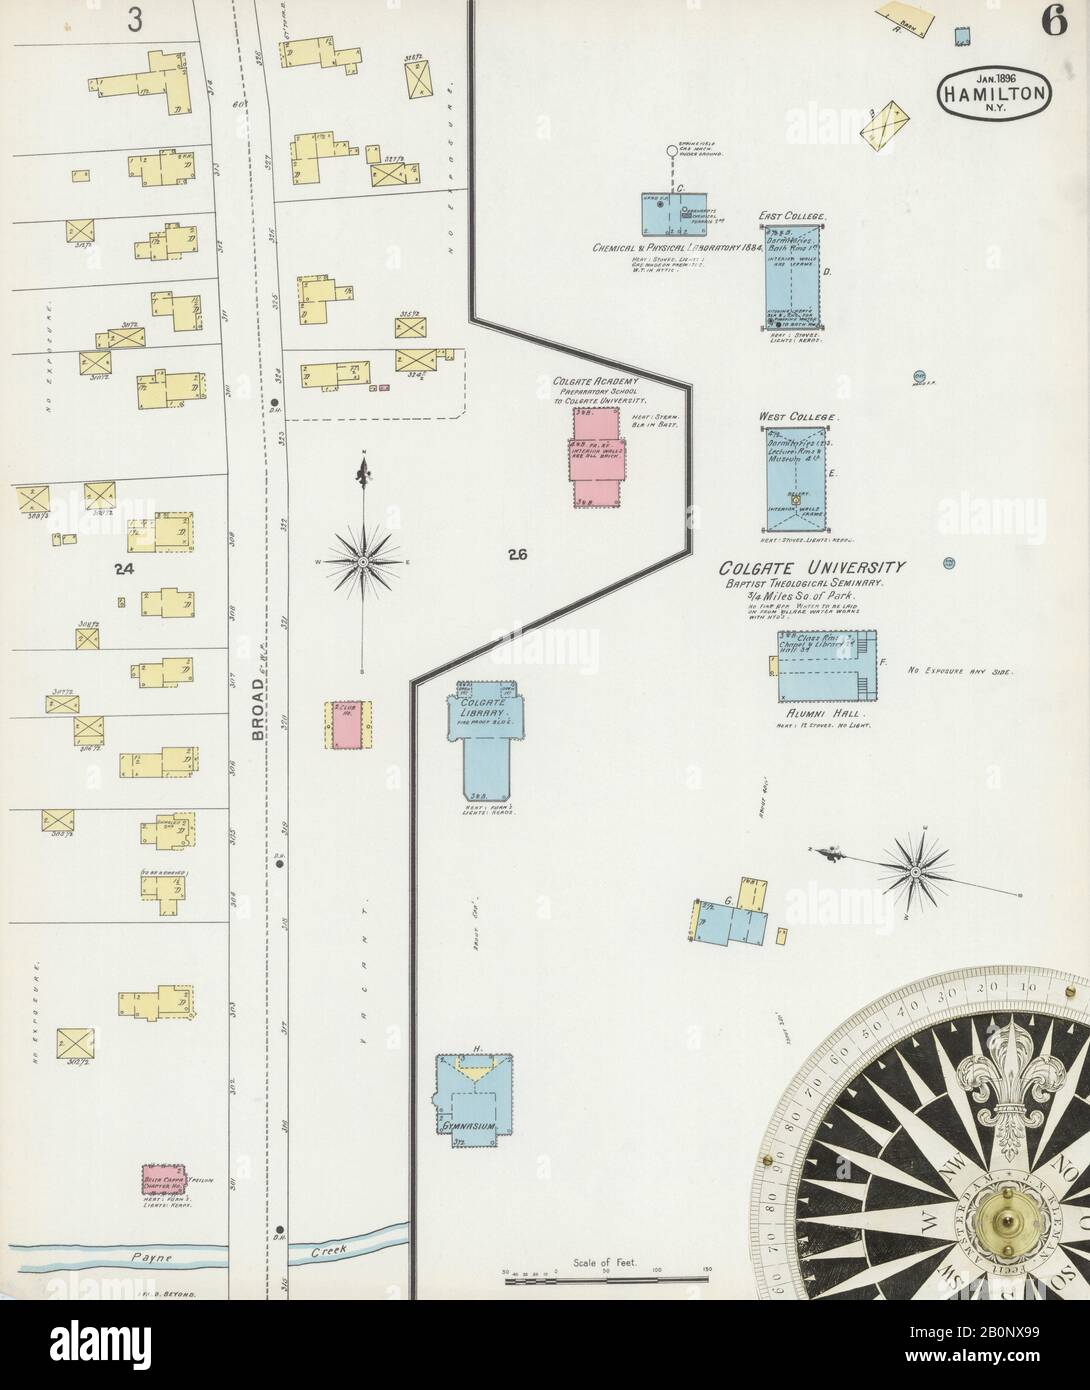 Imagen 6 De Sanborn Fire Insurance Map De Hamilton, Madison County, Nueva York. Ene 1896. 6 Hoja(s), América, mapa de calles con una brújula del siglo Xix Foto de stock